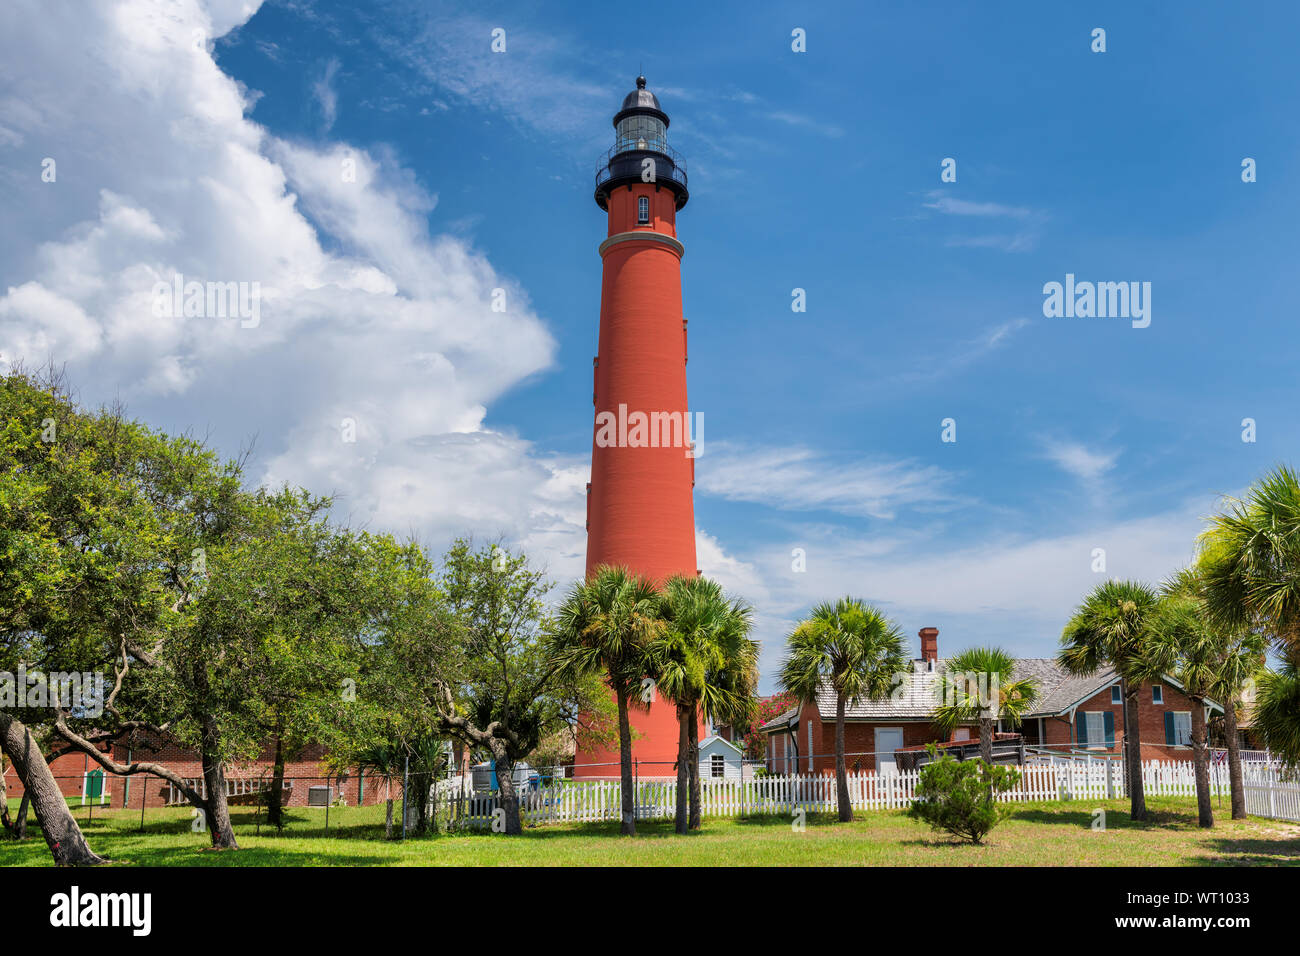 Ponce Inlet Lighthouse, Daytona Beach, Florida. Stock Photo